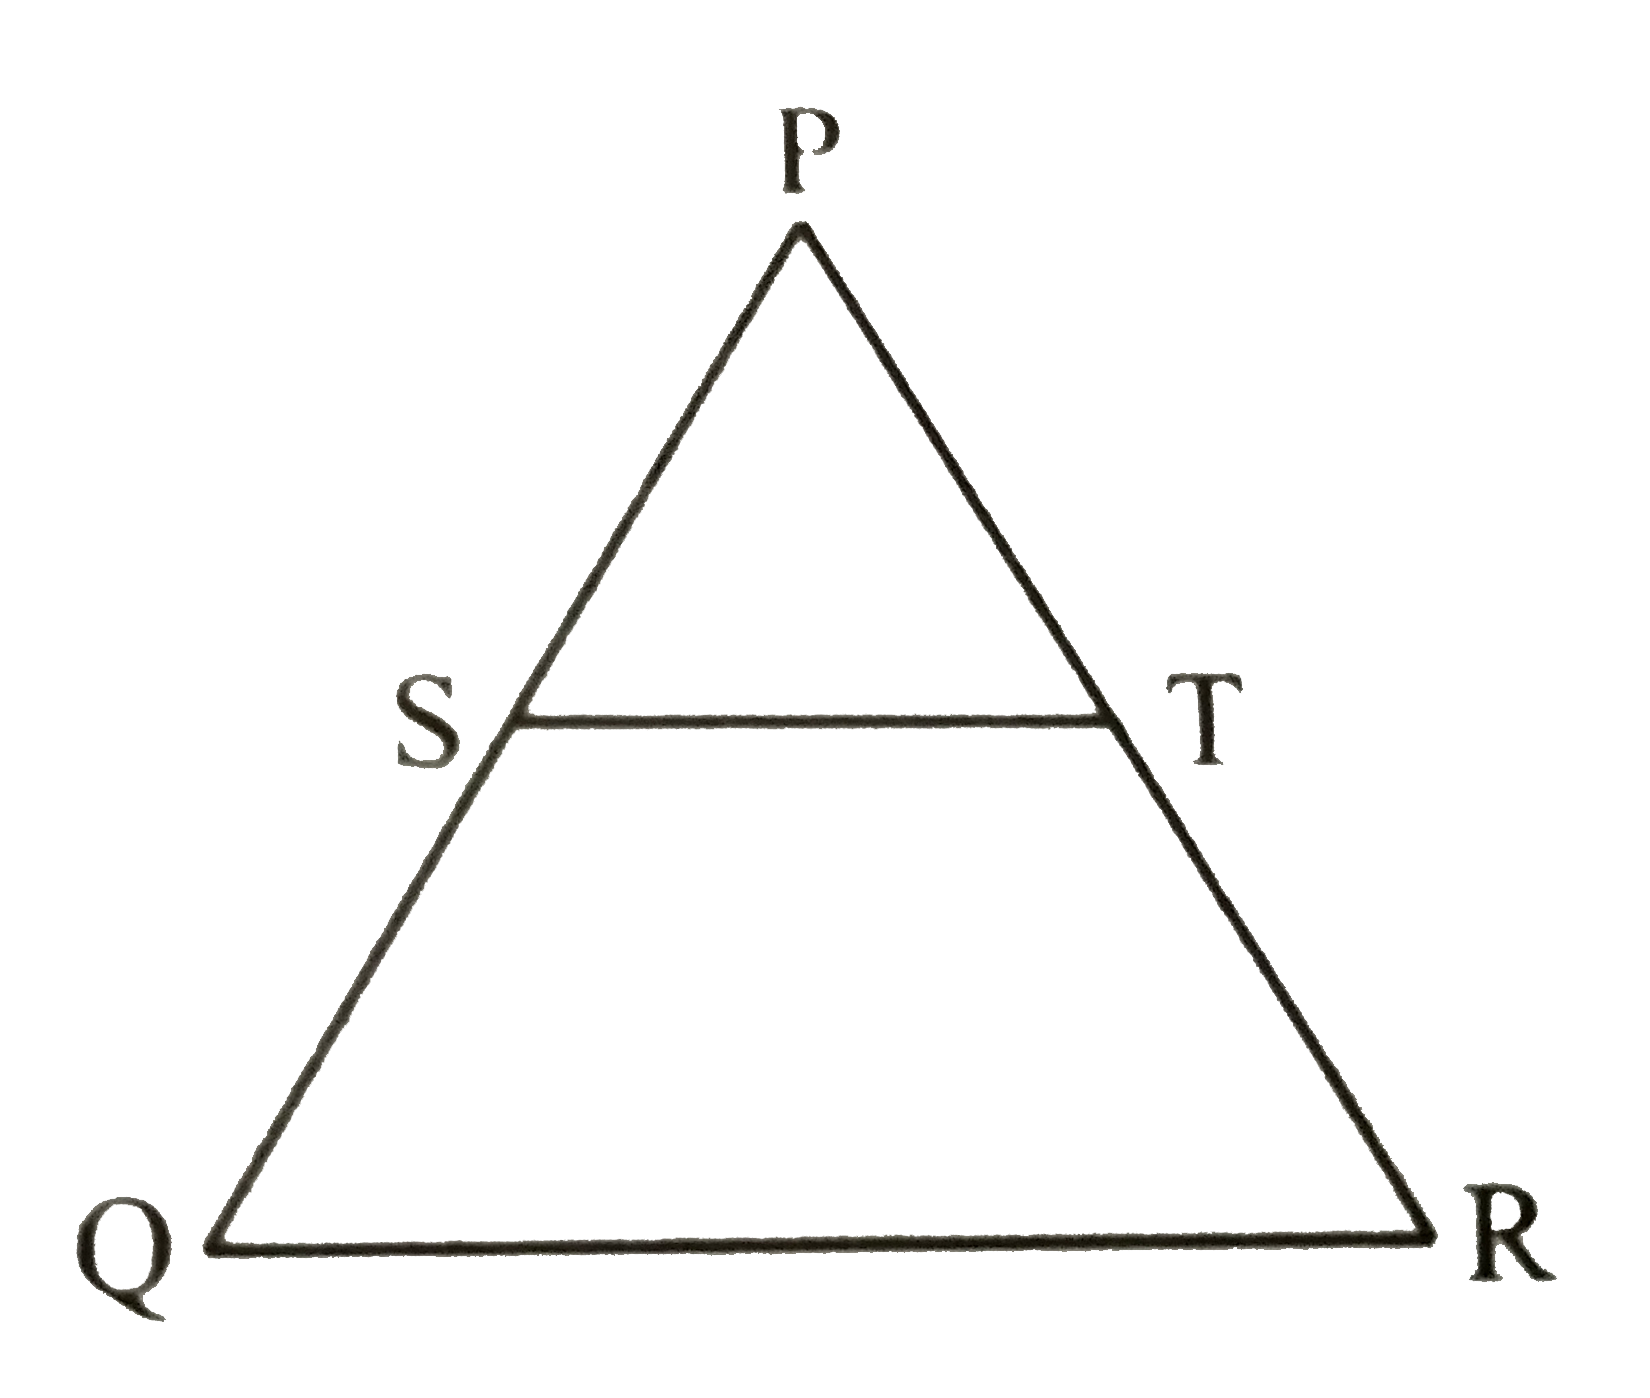 दी गई आकृति में (PS)/(SQ) = (PT)/(TR) तथा anglePST = anglePRQ है । सिद्ध कीजिए कि   trianglePQR एक समद्विबाहु त्रिभुज है ।